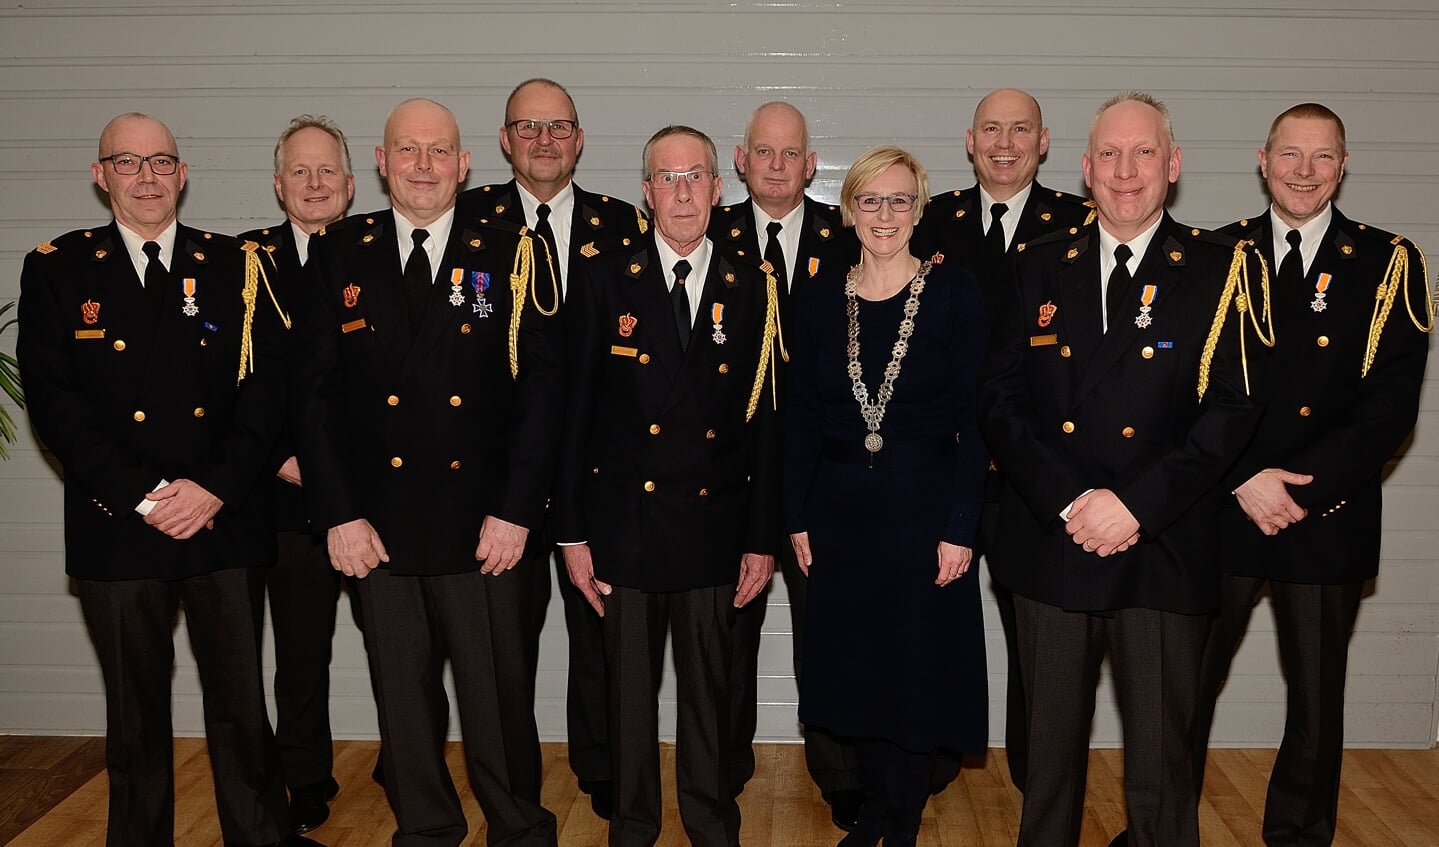 Koninklijke waardering uitgereikt aan Steenderense brandweervrijwilligers. Foto: Harold Aalderink